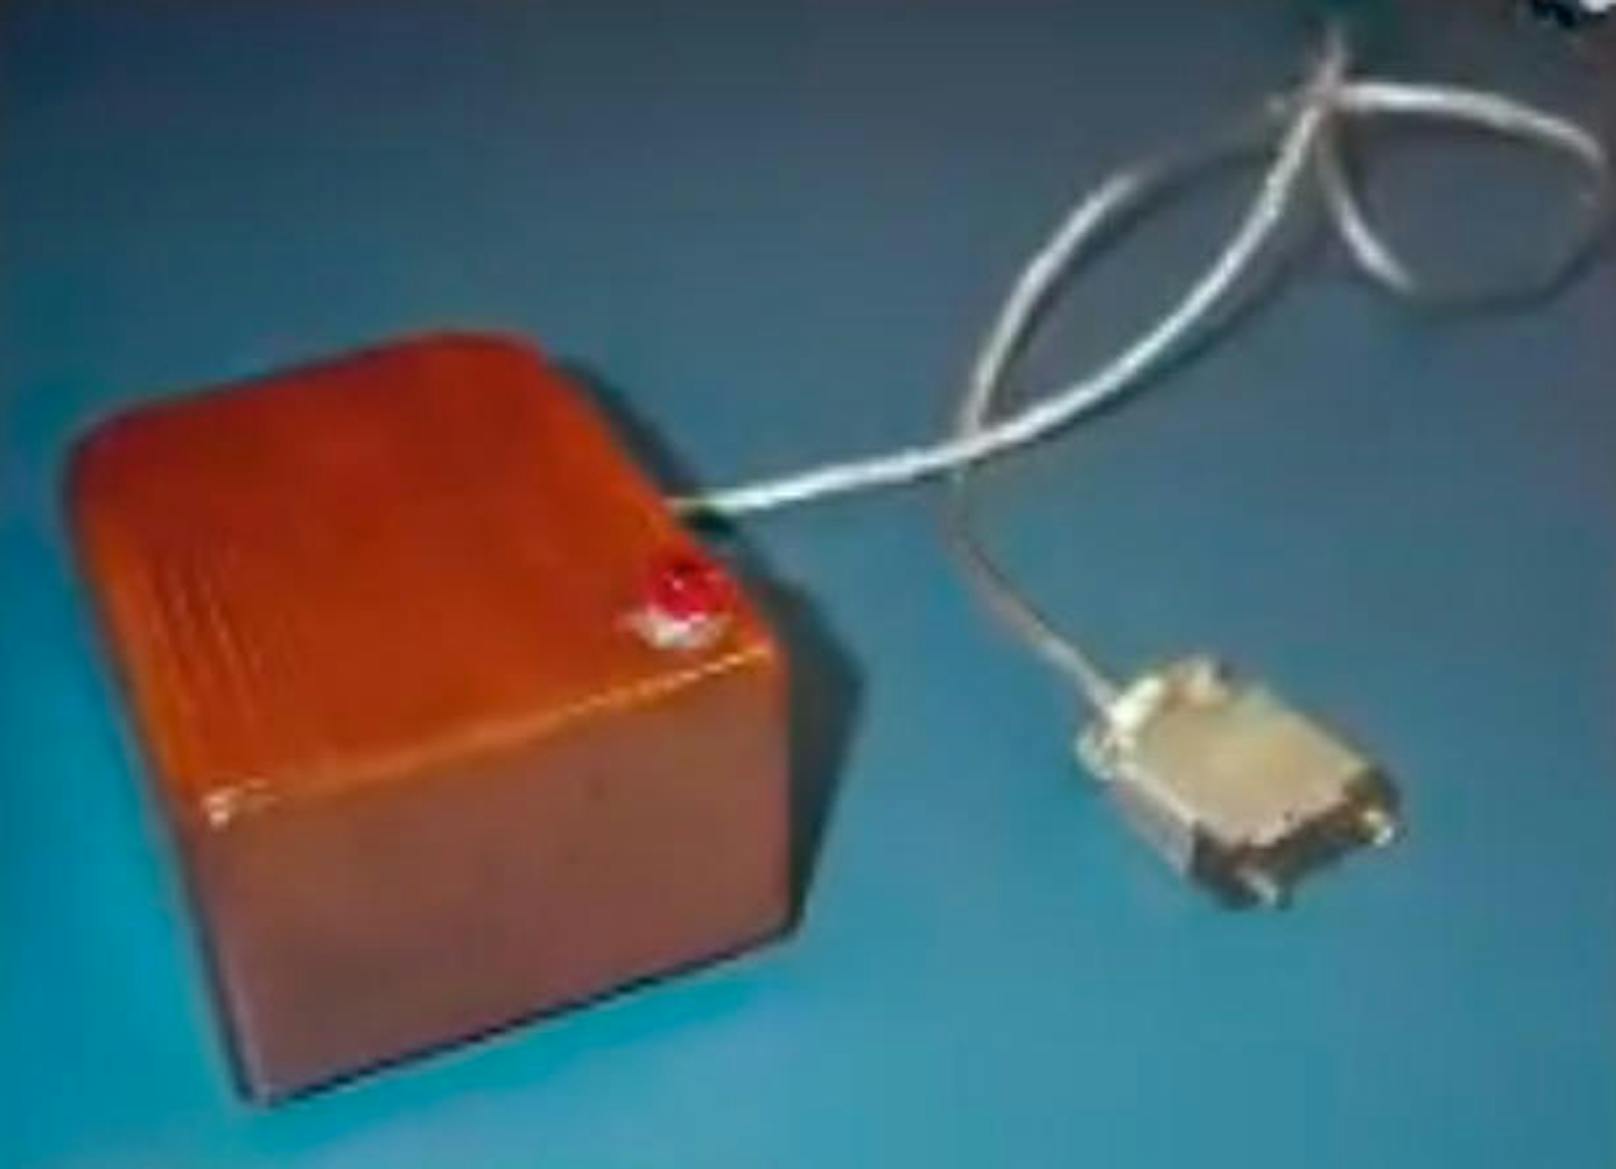 Wer hat die Computermaus erfunden? Steve Jobs? Oder Bill Gates? Beide Antworten sind falsch. Vor 50 Jahren, am 9. Dezember 1968, hat der Tüftler Douglas C. Engelbart in San Francisco erstmals eine Computermaus demonstriert. Der erste Prototyp (im Bild) war ein Holzgehäuse mit einem Rad, das die Bewegung des Gerätes in Cursor-Bewegungen auf dem Bildschirm umsetzte. massentauglich wurde die Maus zehn Jahre später mit der Einführung des Apple Macintosh. Als Eingabeinstrument wird die Maus aber inzwischen vom menschlichen Finger überholt. Auf Smartphones und Tablets wird gewischt und getippt. In Zukunft könnte die menschliche Sprache wiederum zur populärsten Dialogmethode zwischen Mensch und Maschine werden.